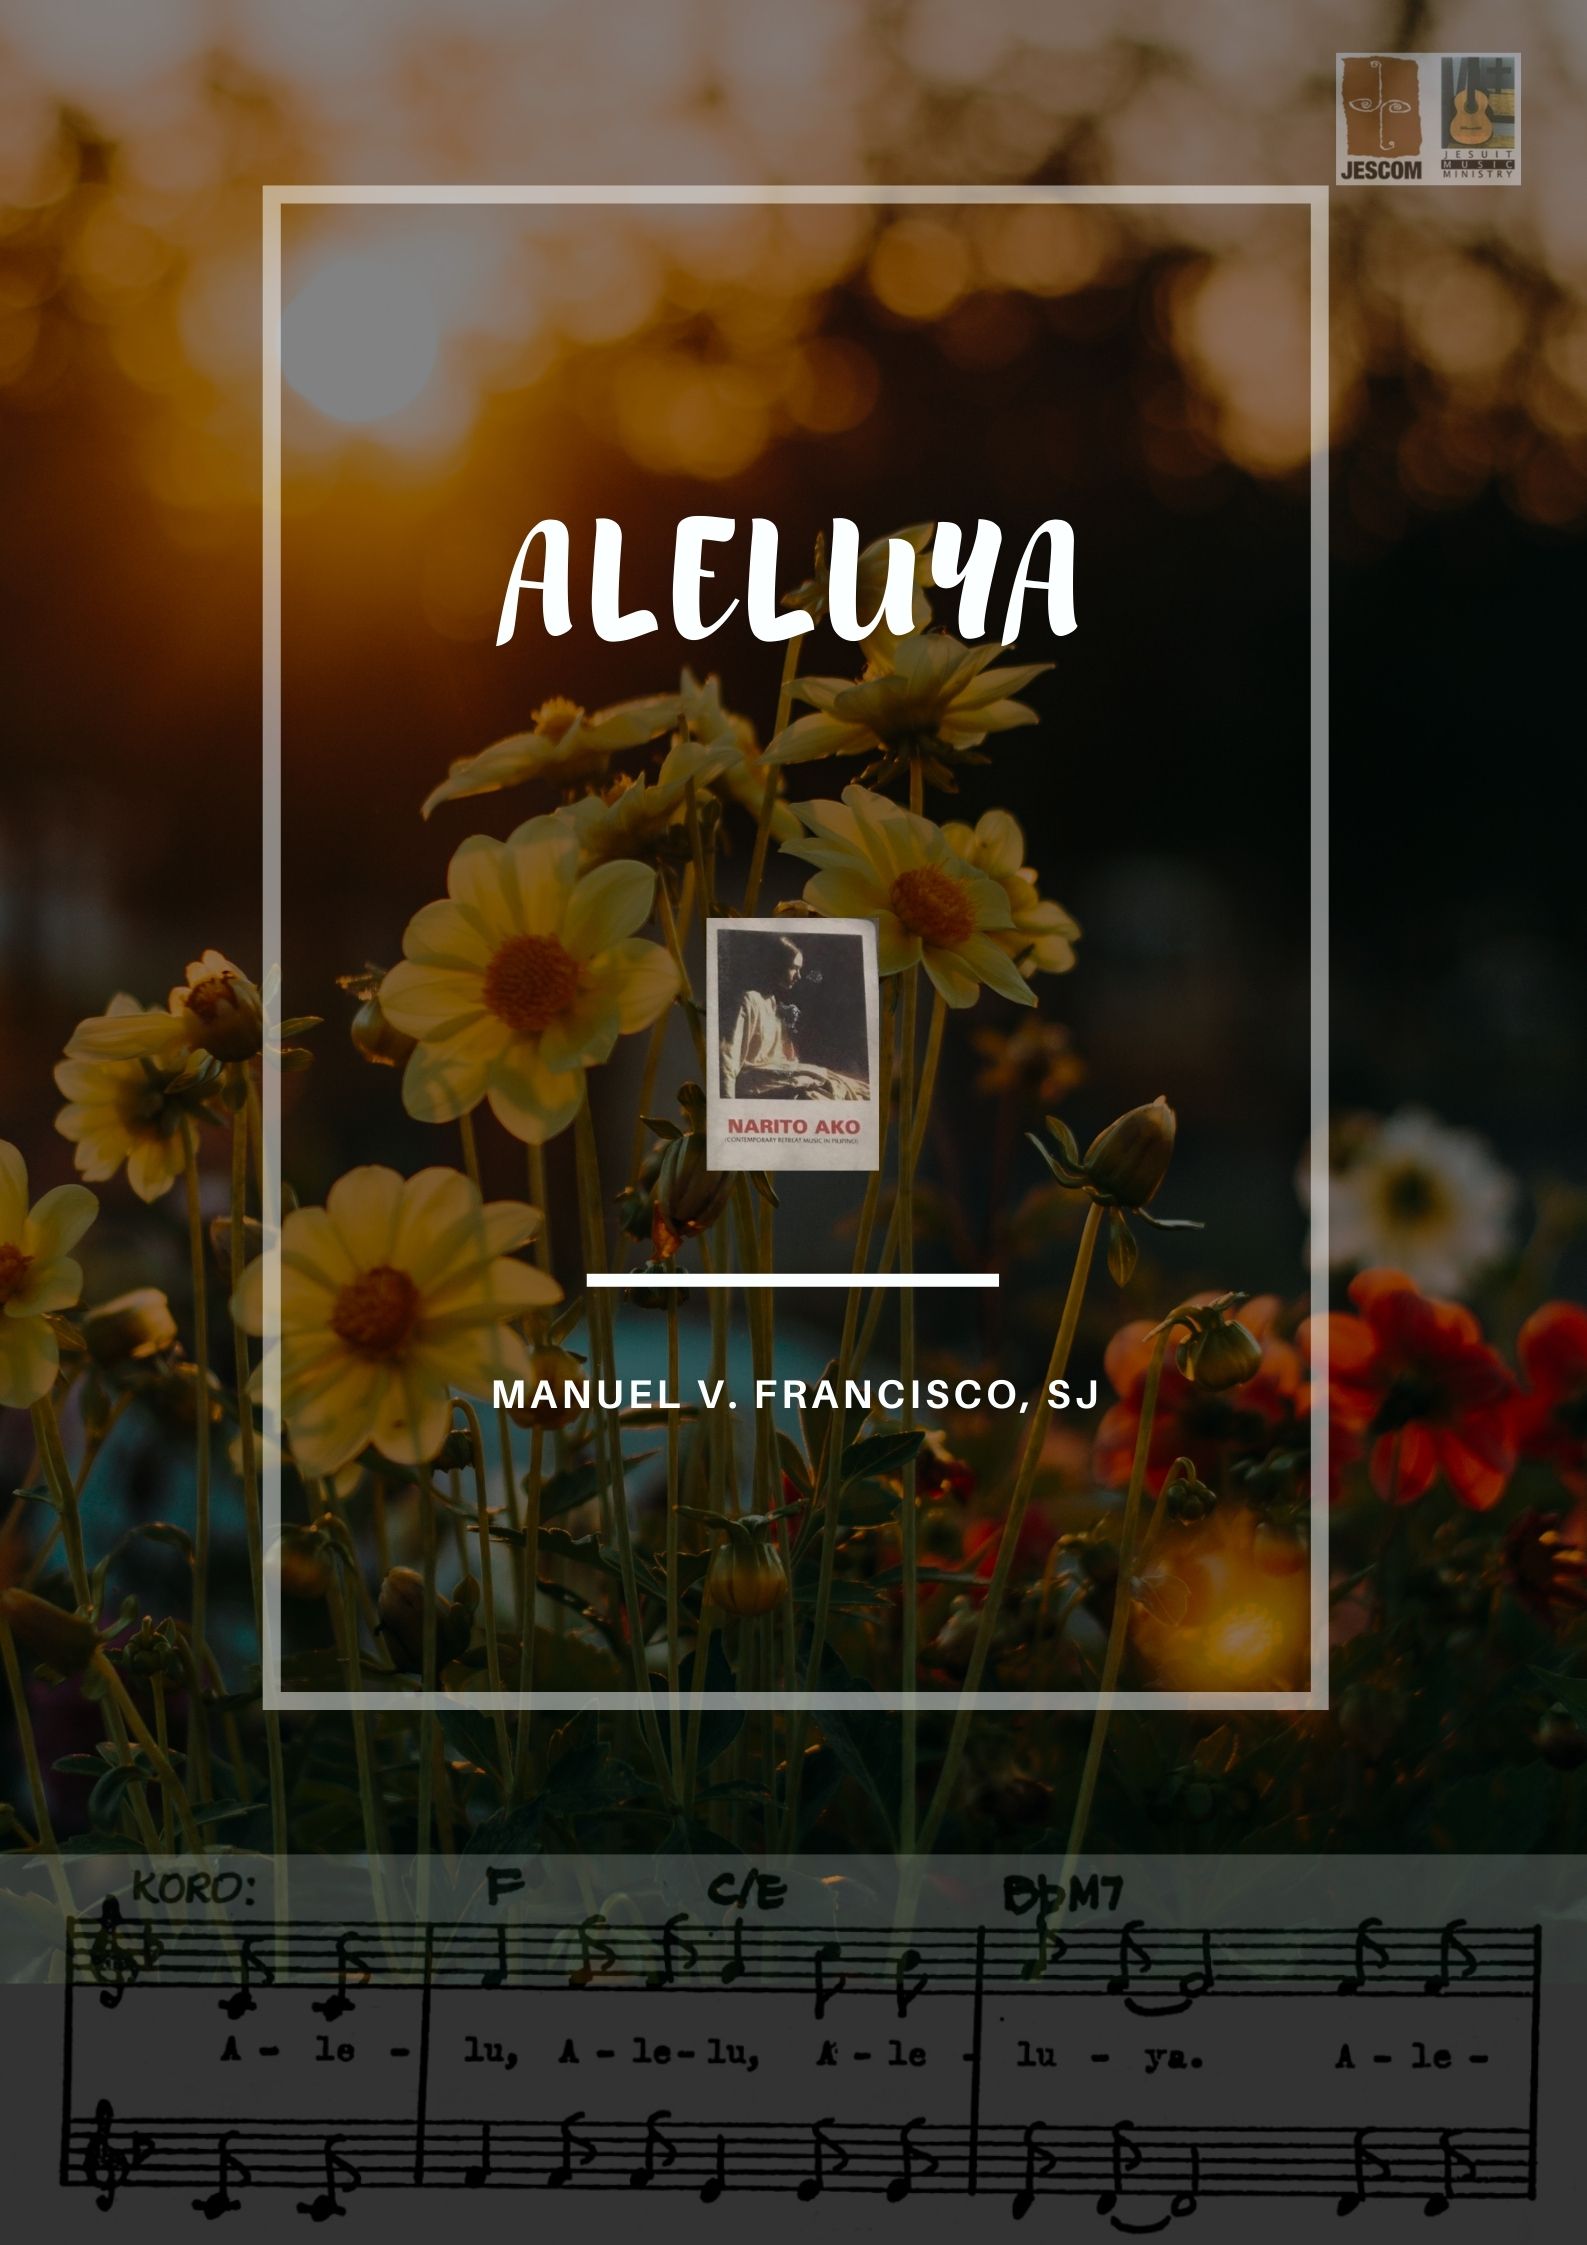 Aleluya in F (Alelu) – Music Sheet